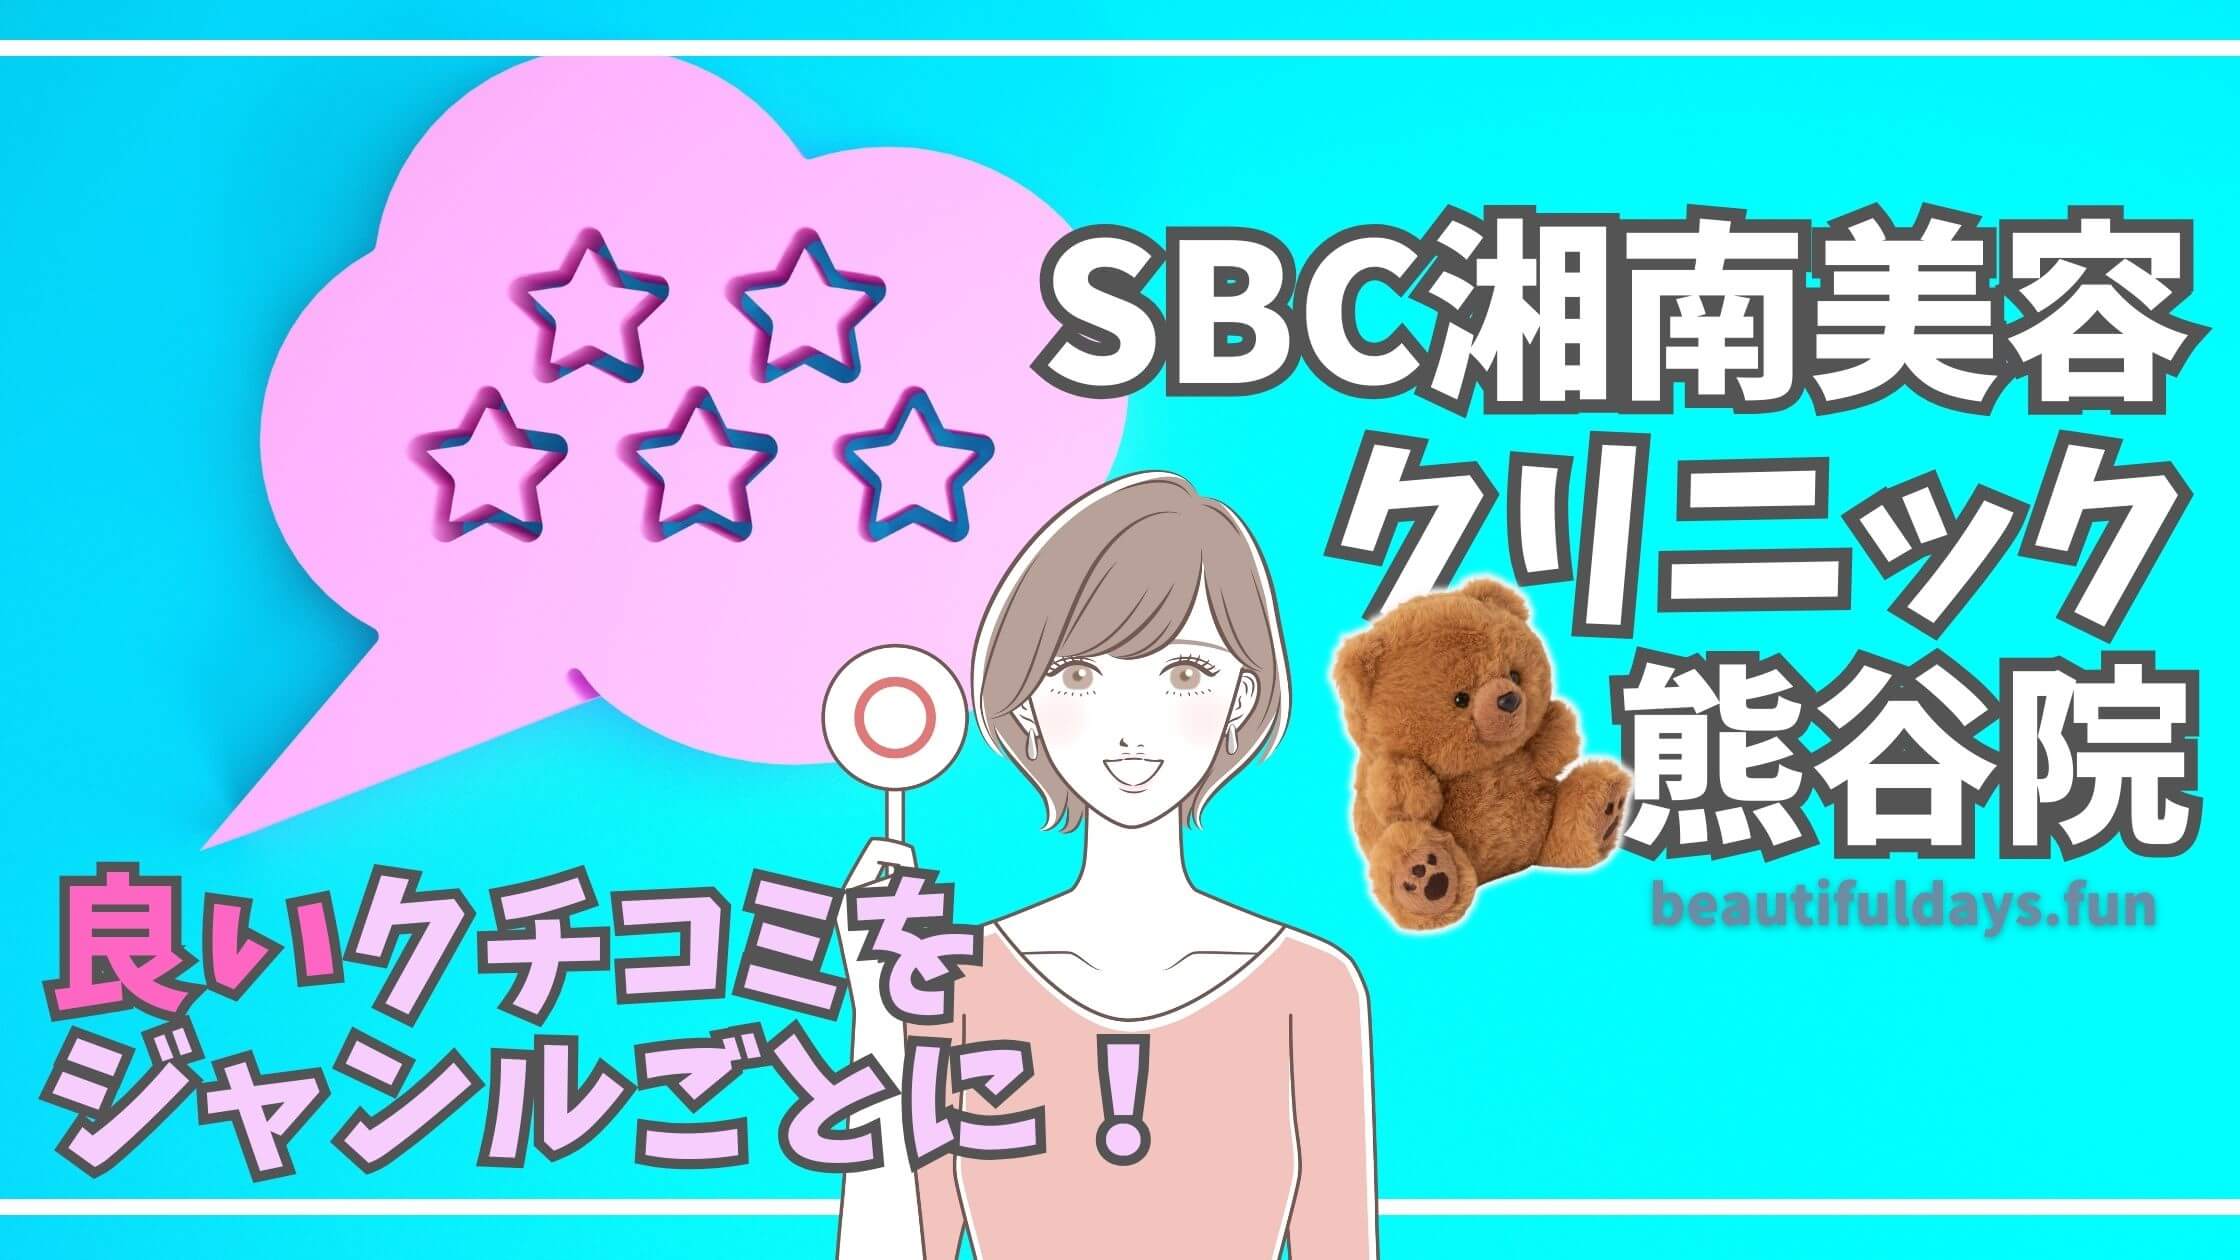 SBC-kumagaya-reviews-good